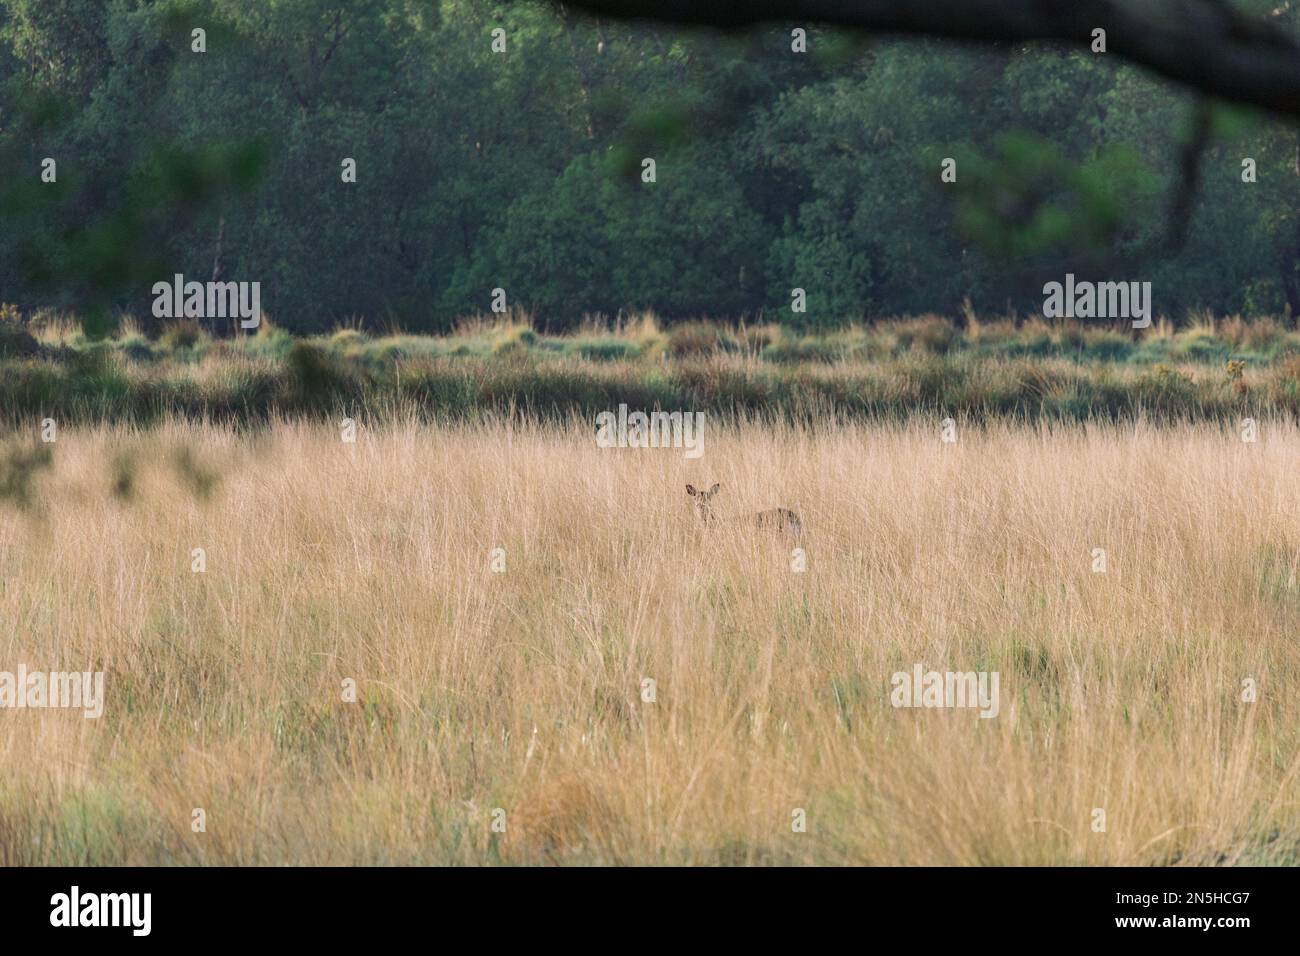 Camouflage de cerf dans une grande herbe brune et verte dans une zone forestière Banque D'Images